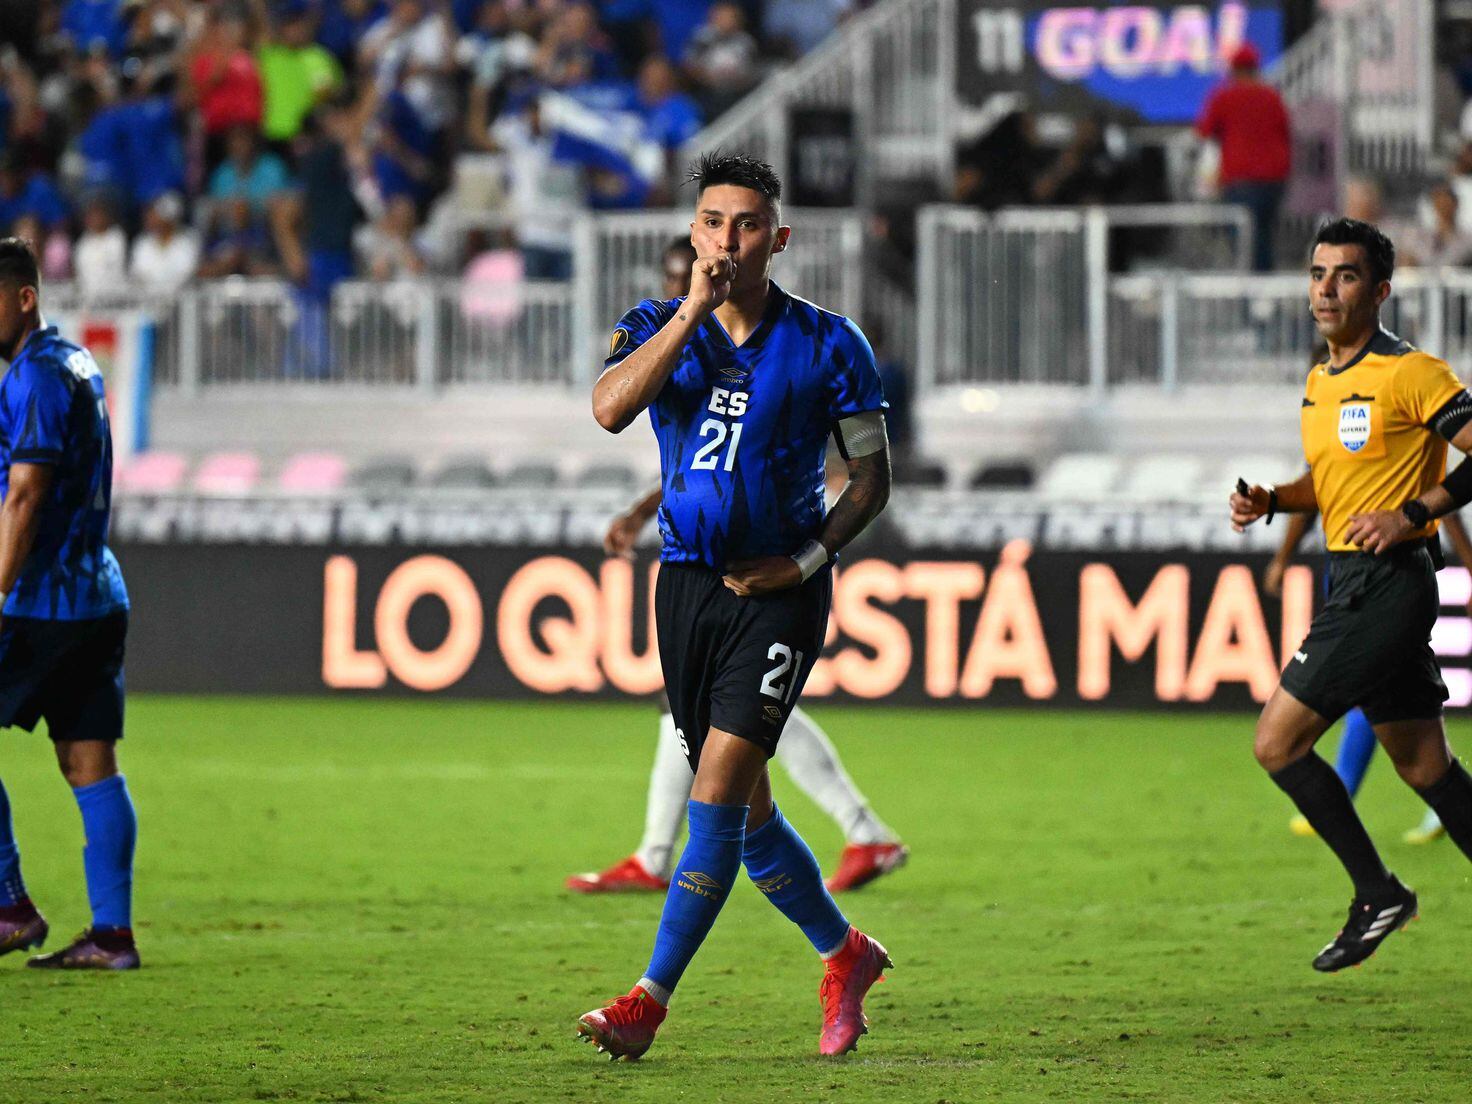 Costa Rica vs Uruguay: Horario, TV; cómo y dónde ver - AS USA